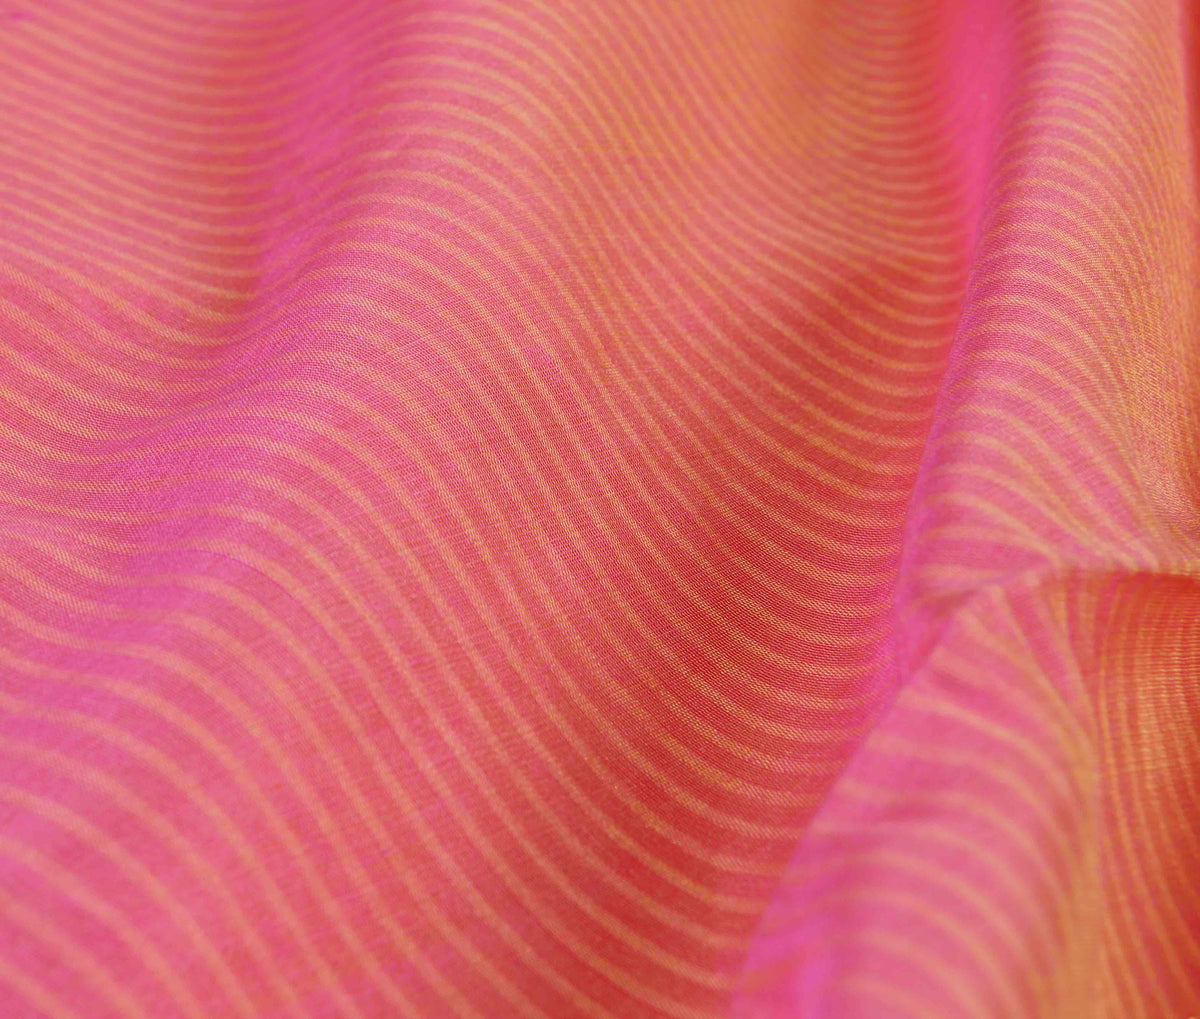 Salmon Cotton Banarasi saree with self stripes (3) closeup